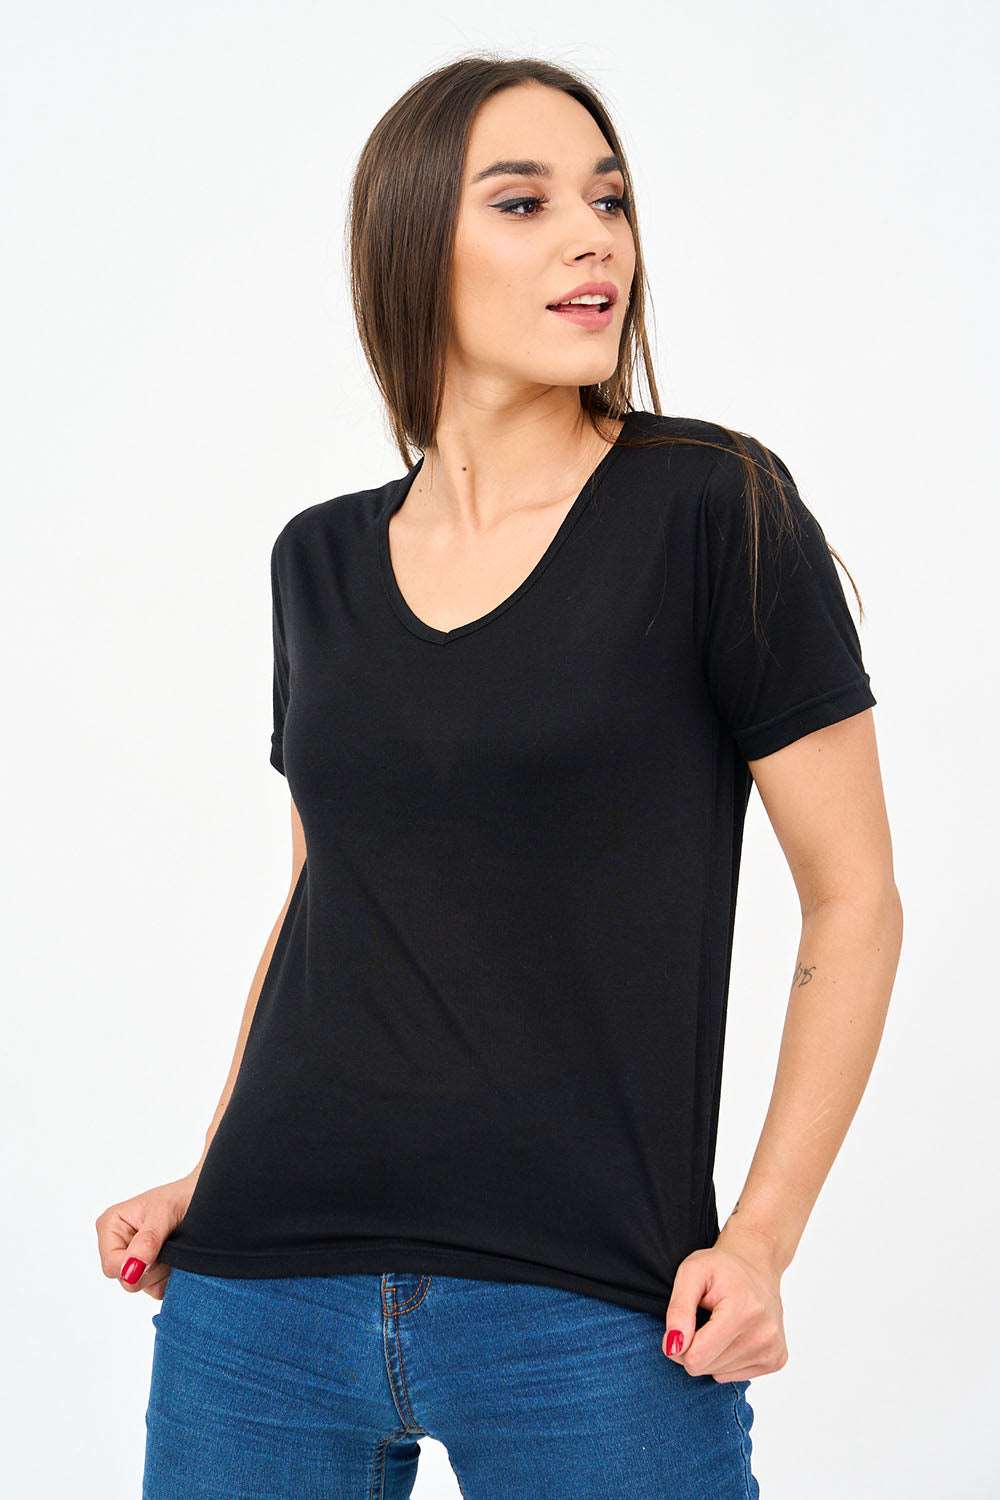 Short-Sleeved V Neck Women's T Shirt in Black!